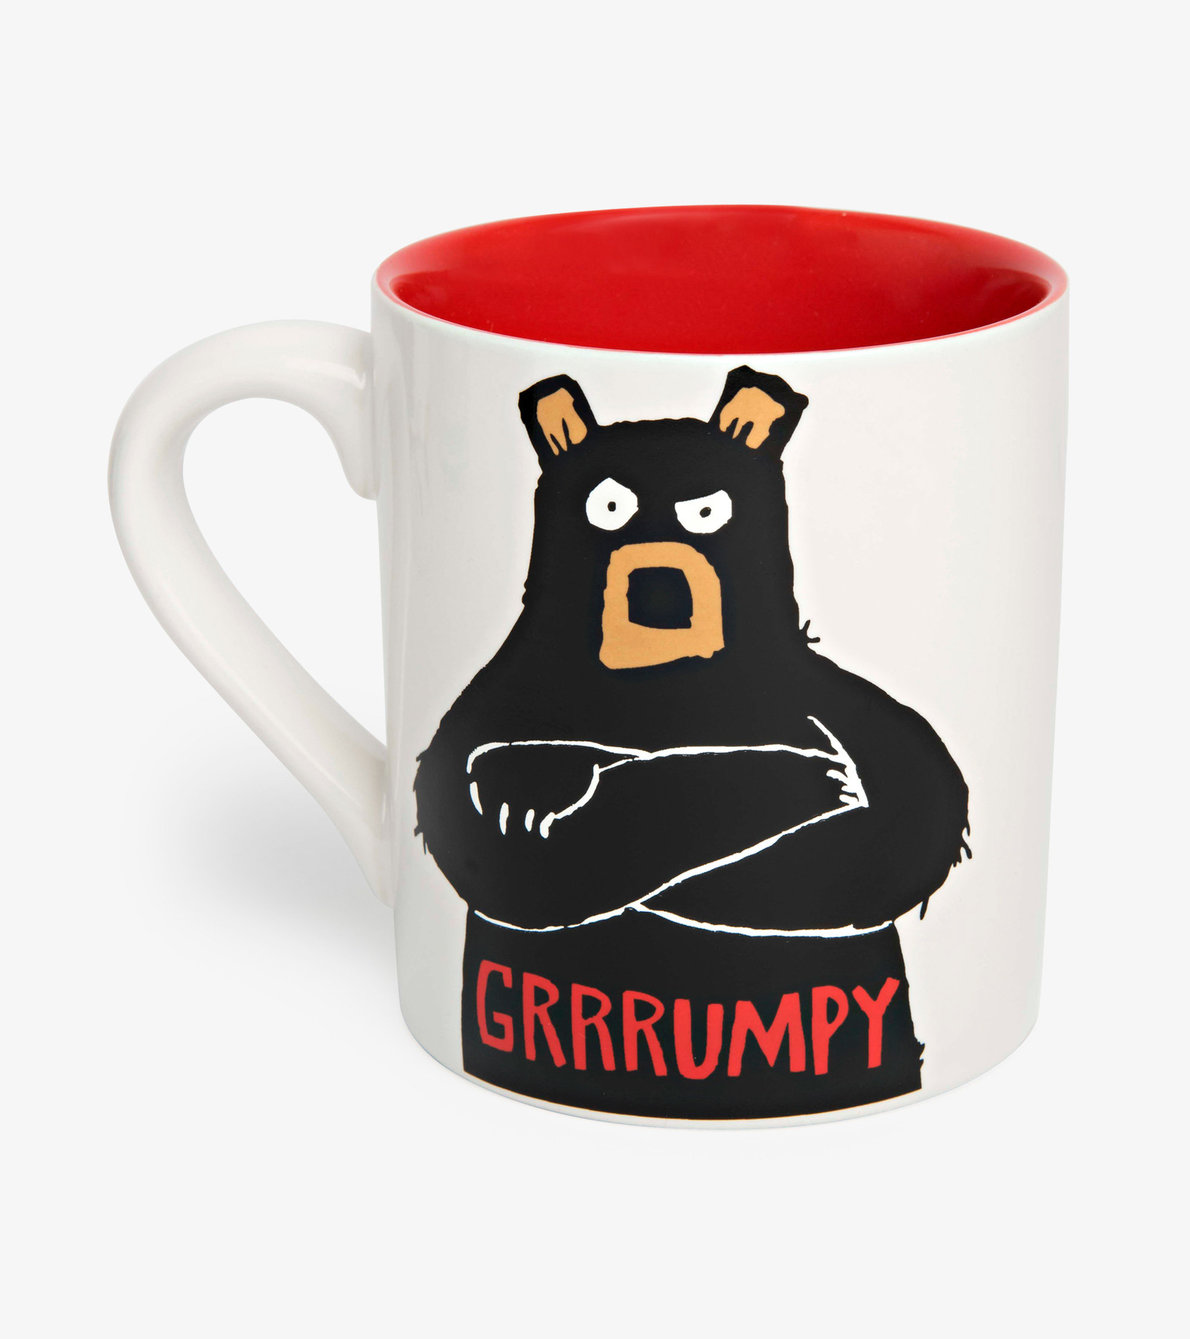 View larger image of Grumpy Ceramic Mug